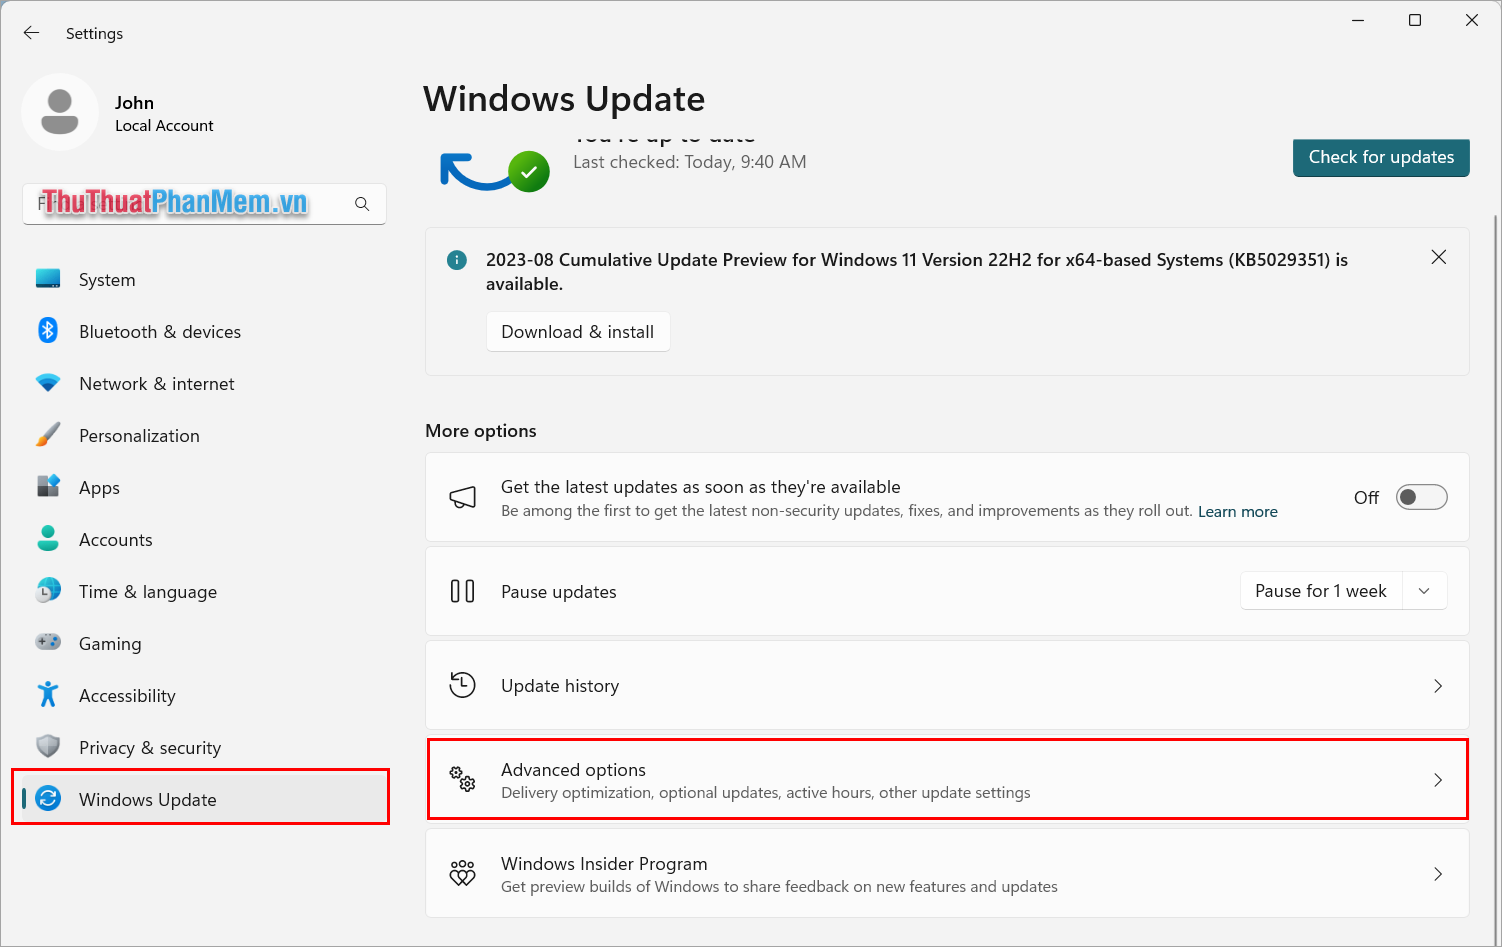 Chọn thẻ Windows Update và mở mục Advanced Options